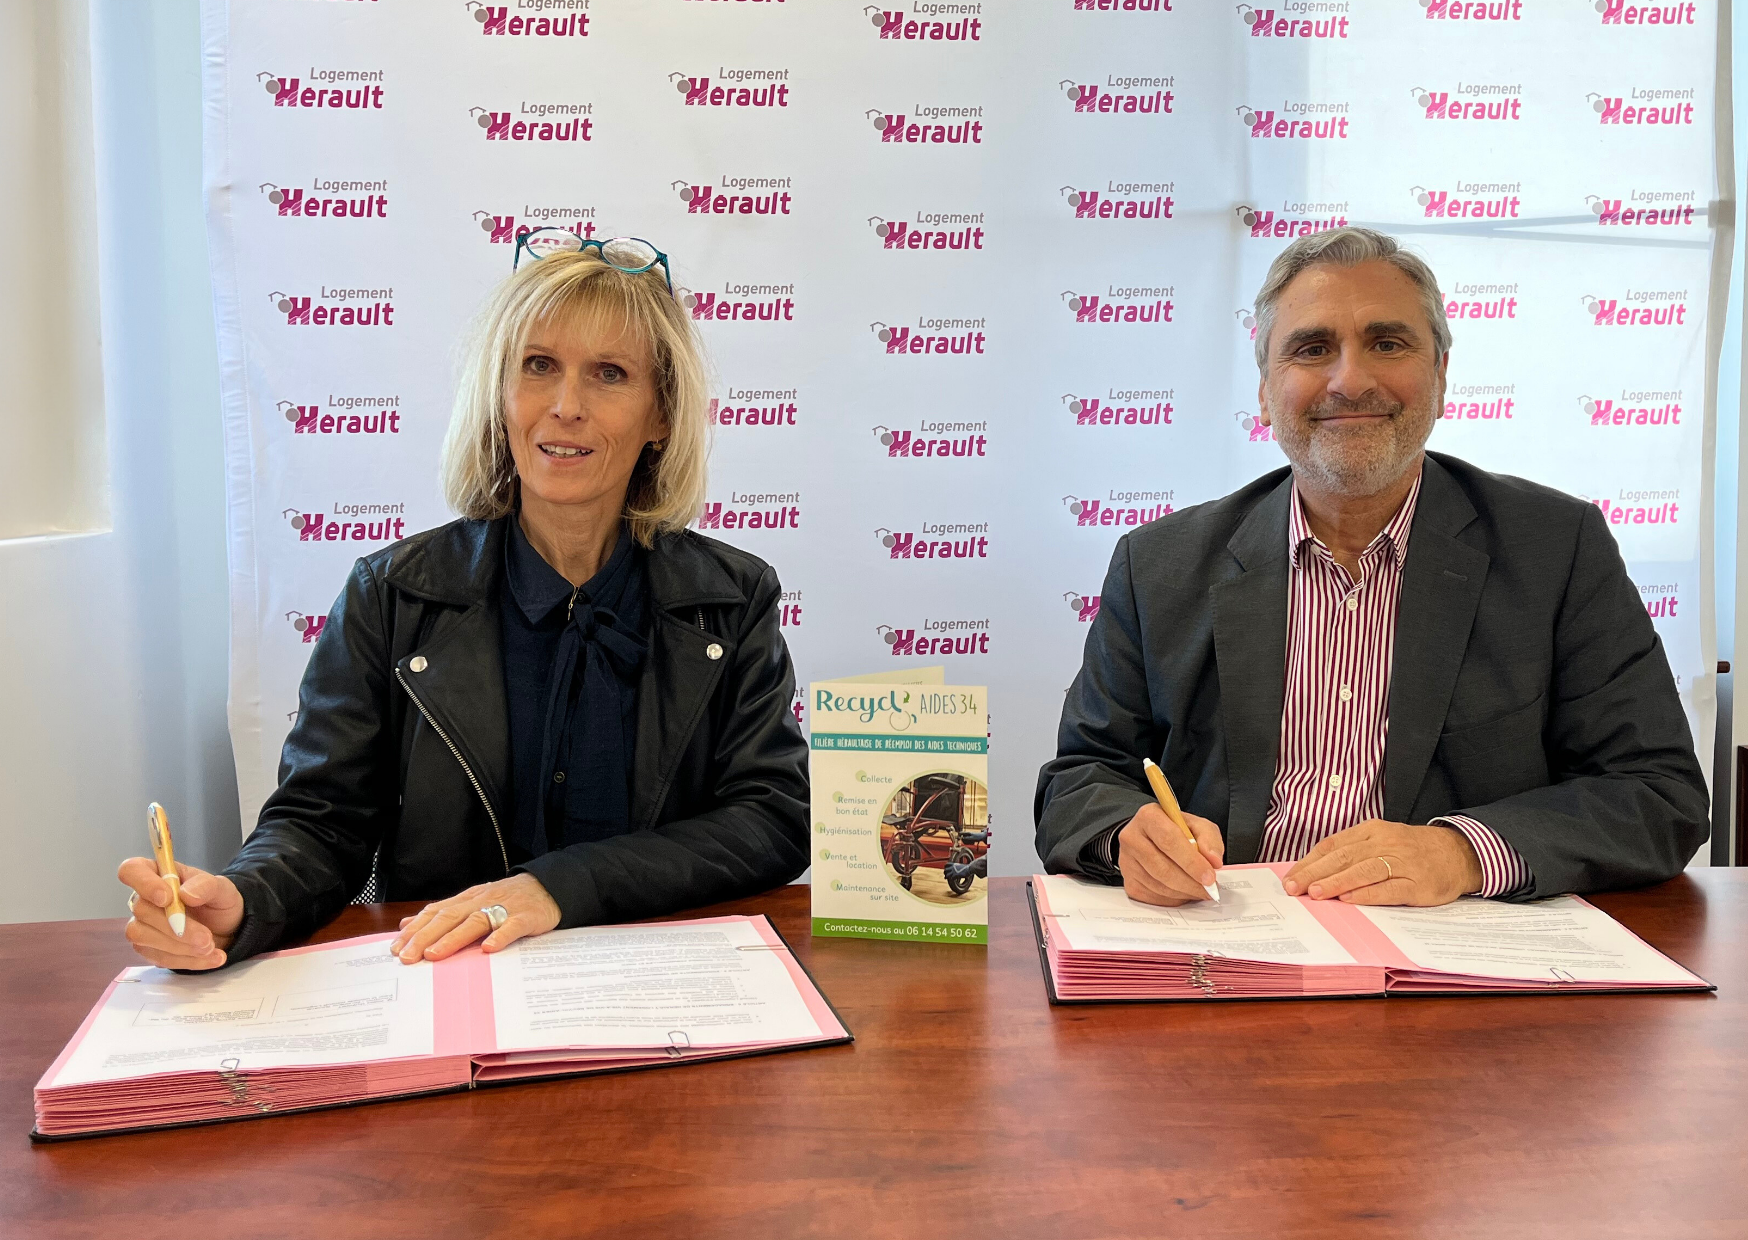  Recycl'Aides 34 et Hérault logement signent une convention de partenariat